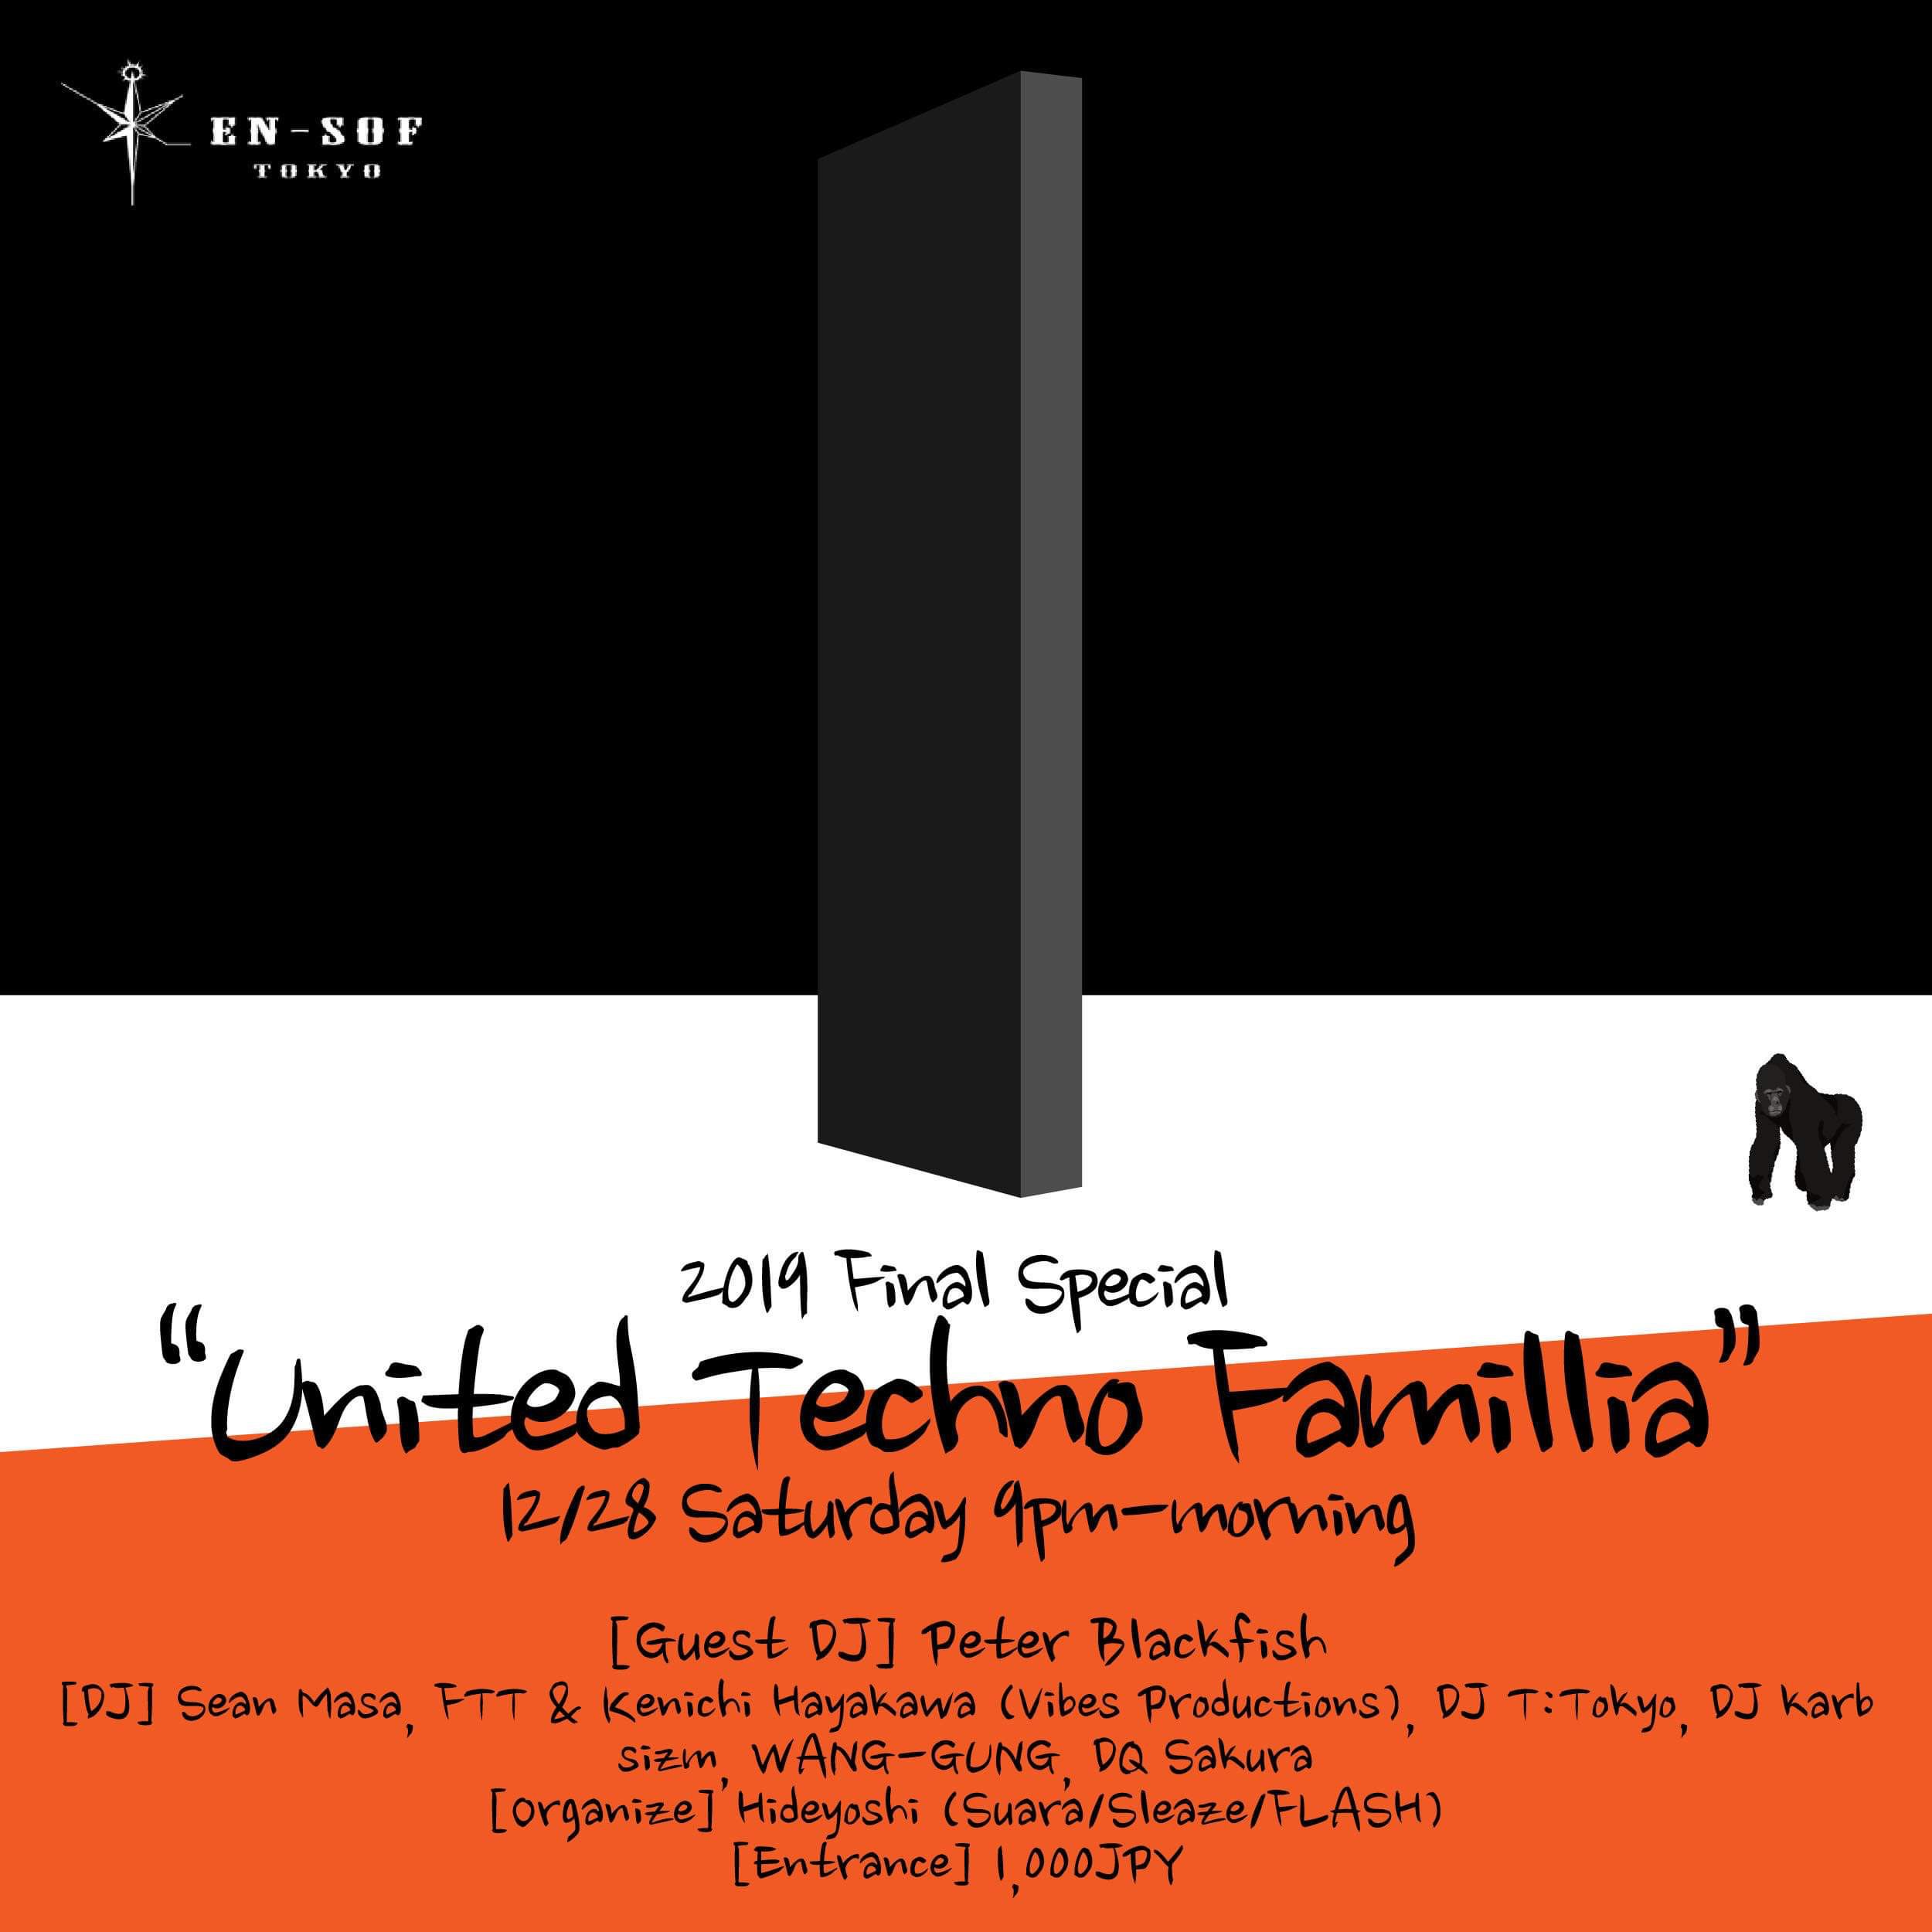 UNITED TECHNO FAMILLIA -2019 Final Special-